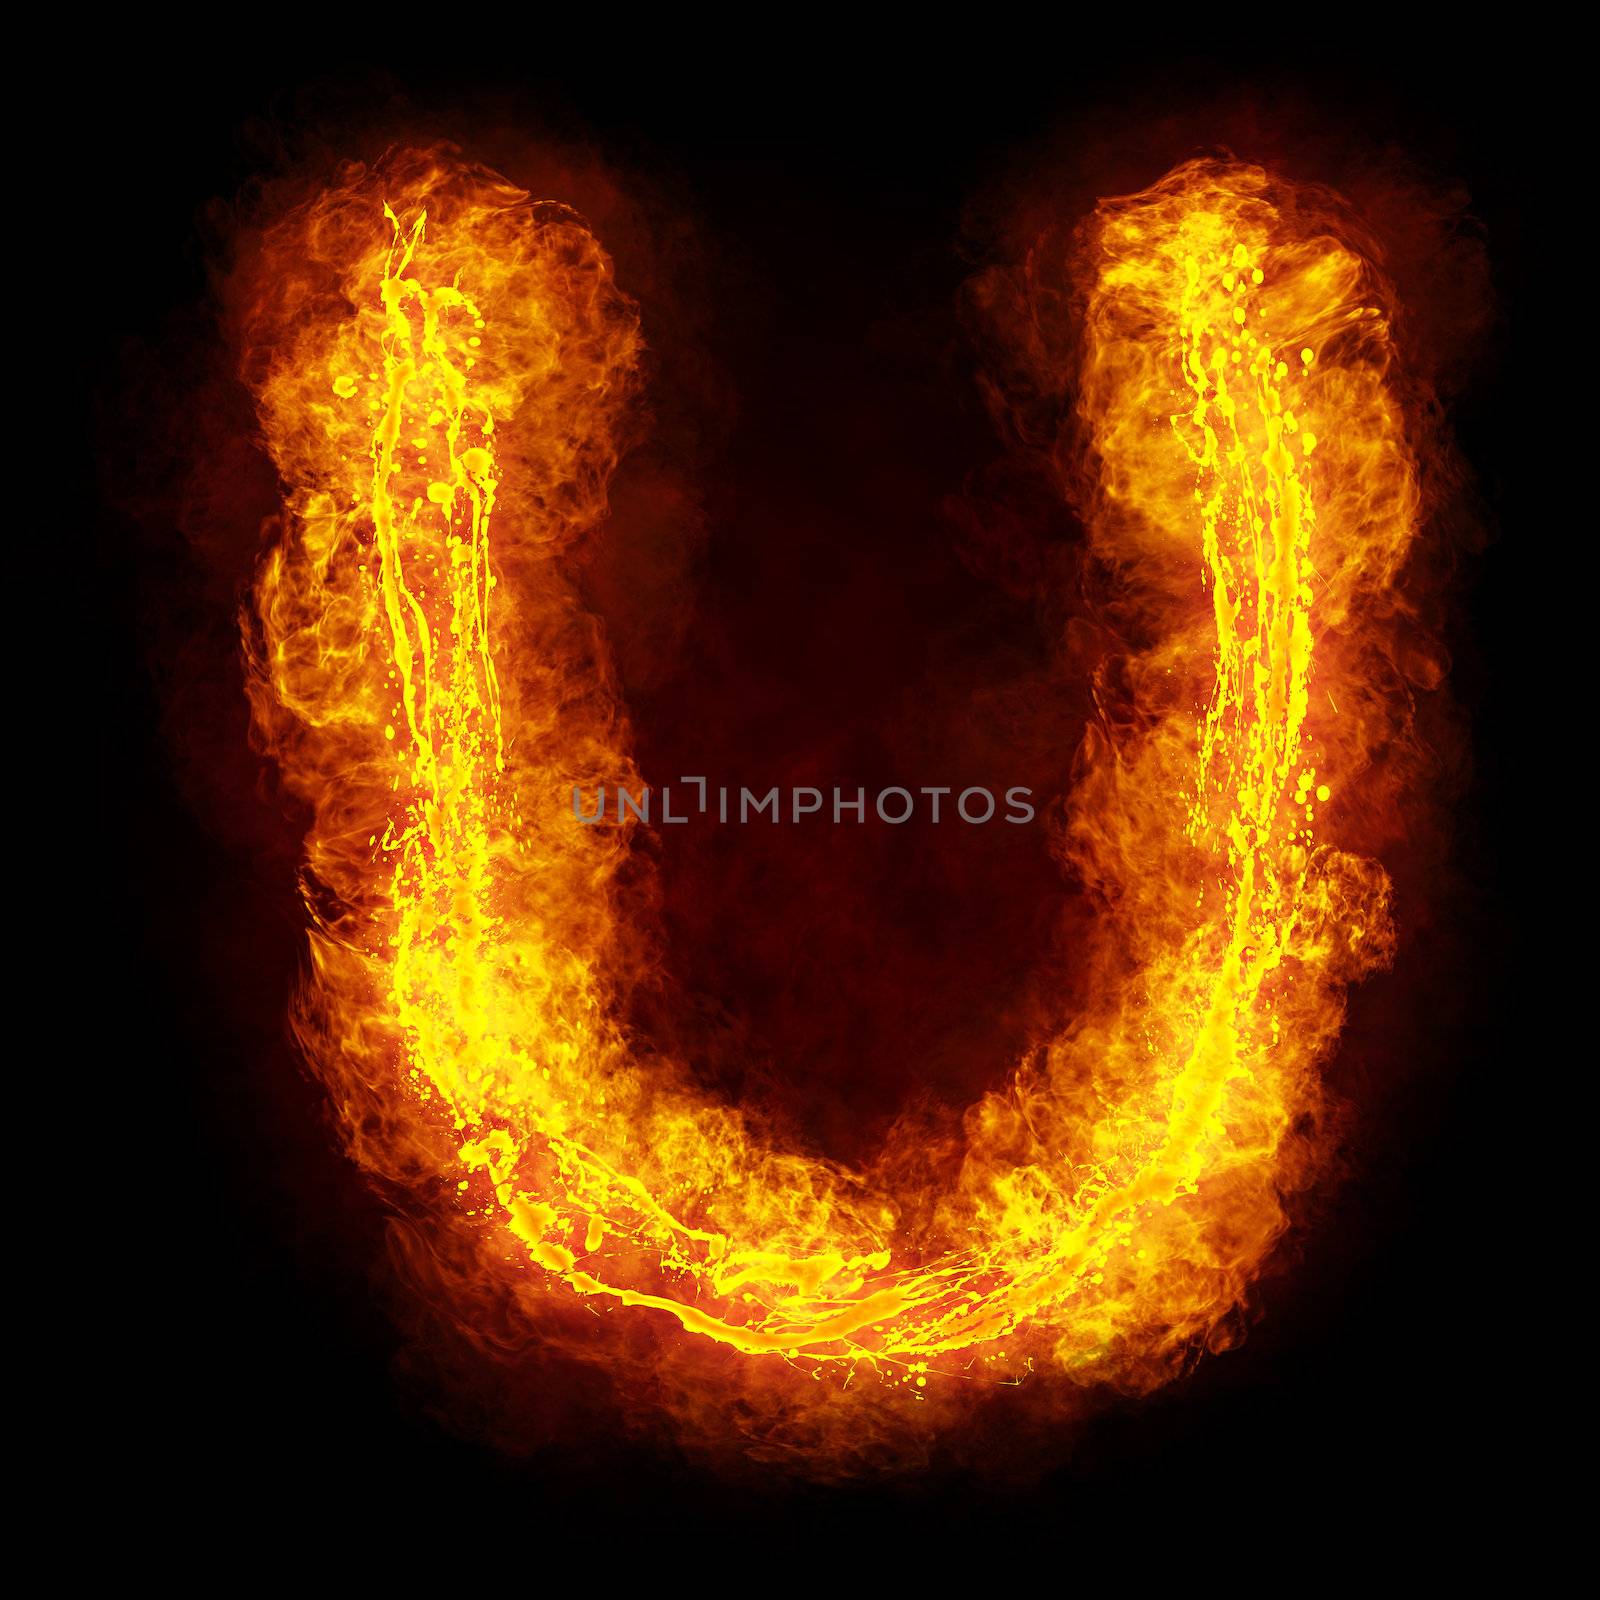 Fiery Font by palinchak